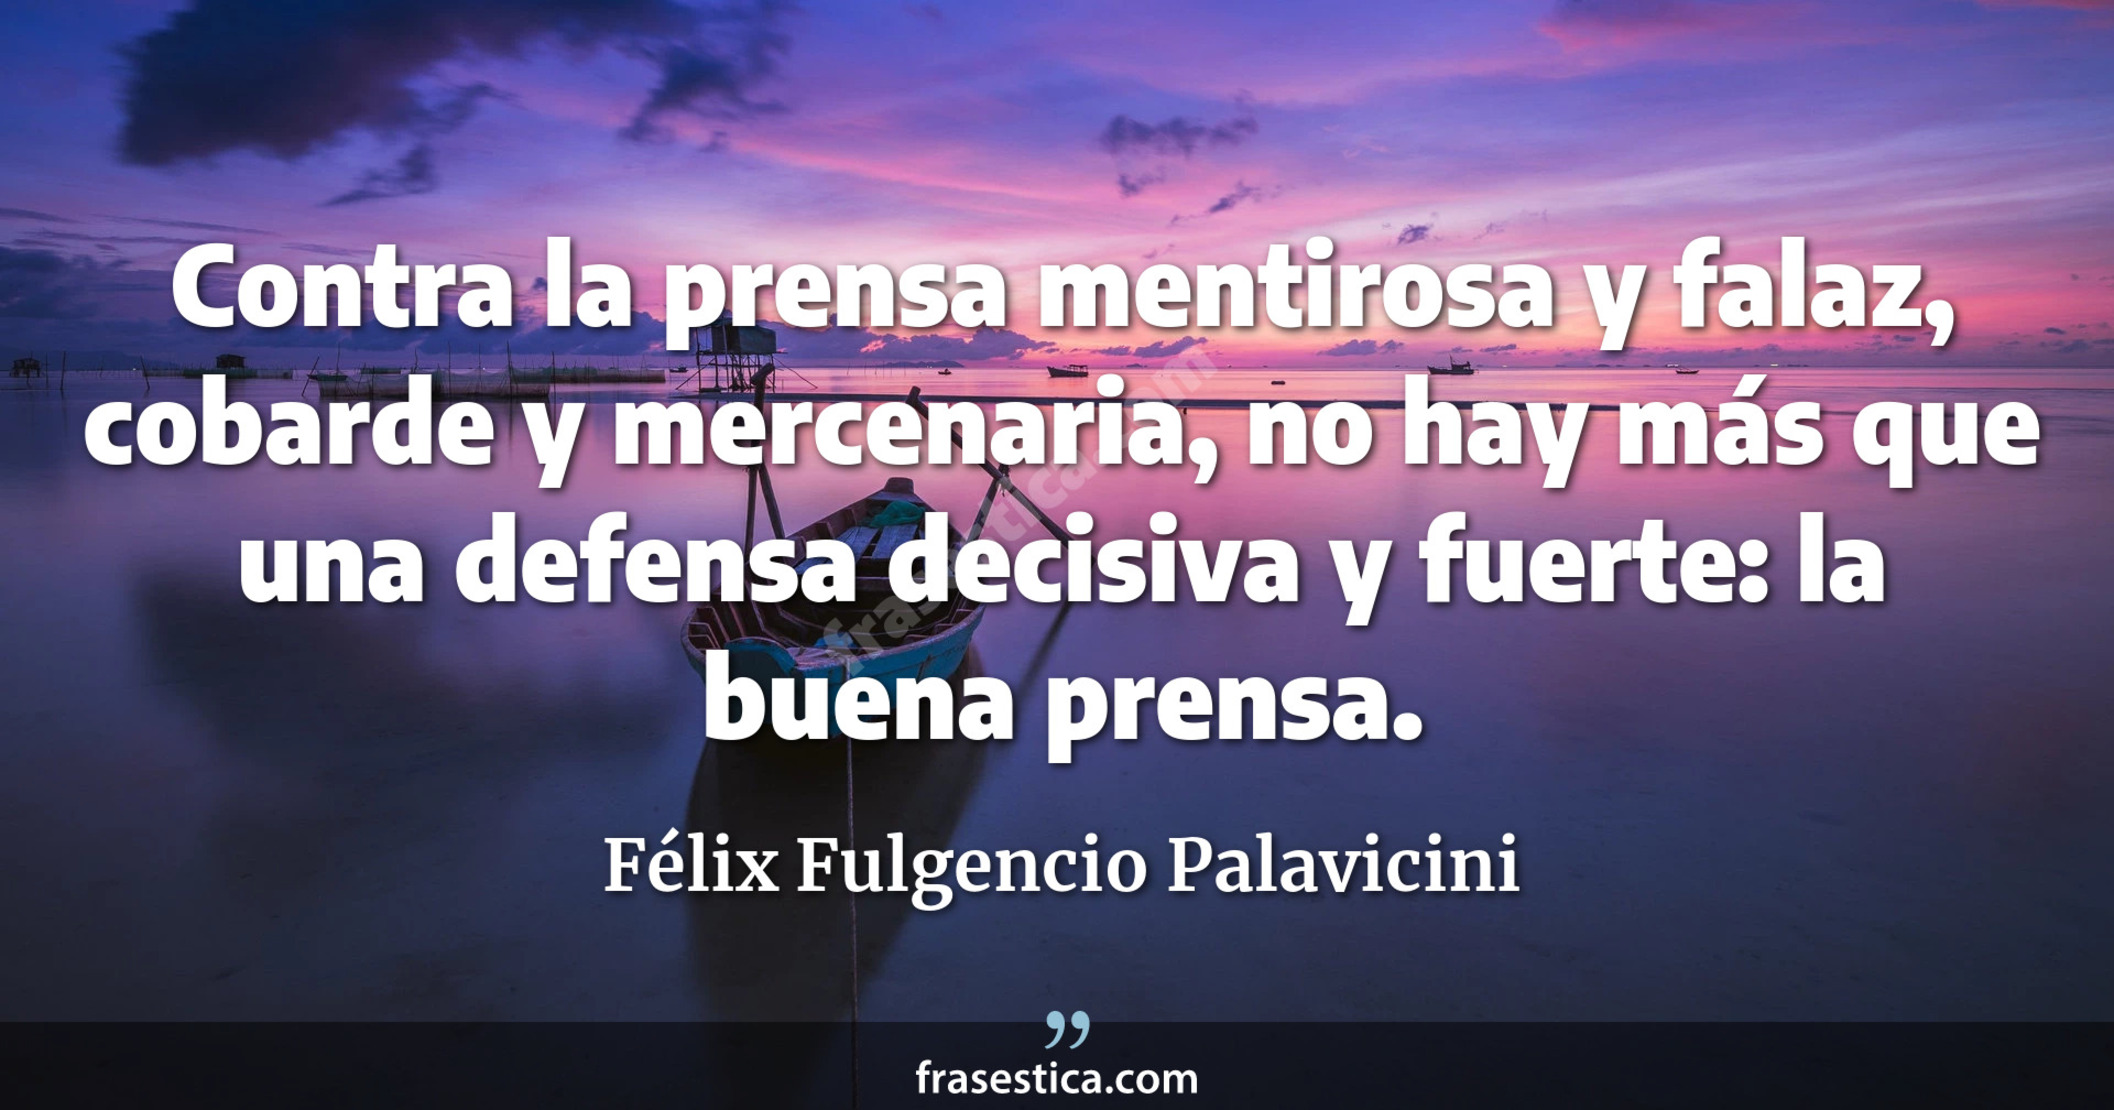 Contra la prensa mentirosa y falaz, cobarde y mercenaria, no hay más que una defensa decisiva y fuerte: la buena prensa. - Félix Fulgencio Palavicini